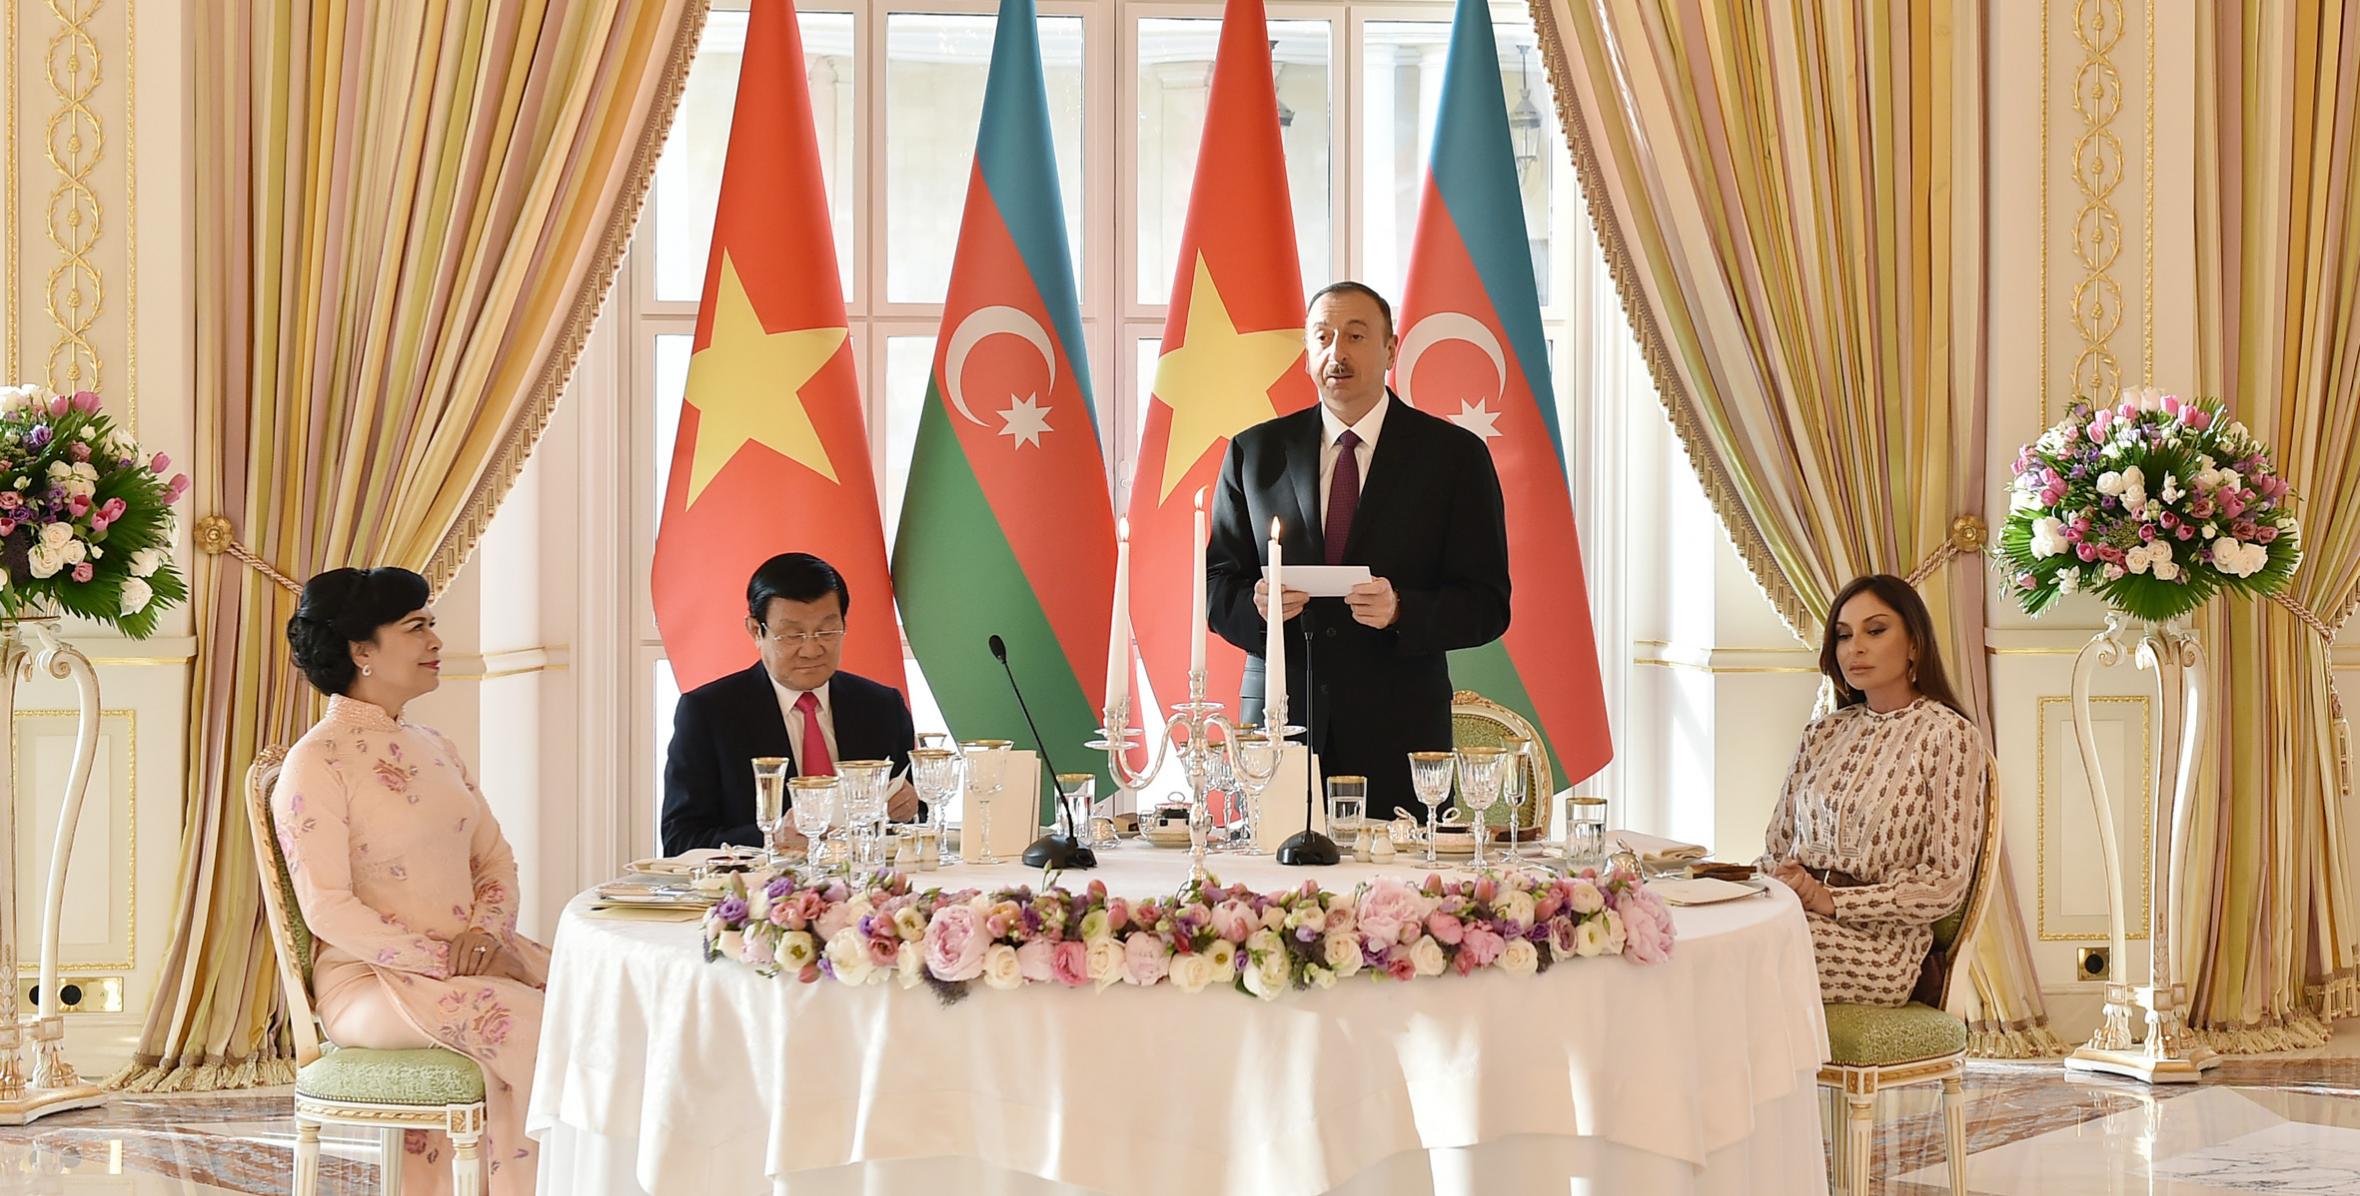 От имени Ильхама Алиева был устроен официальный прием в честь Президента Социалистической Республики Вьетнам Чыонга Тан Шанга